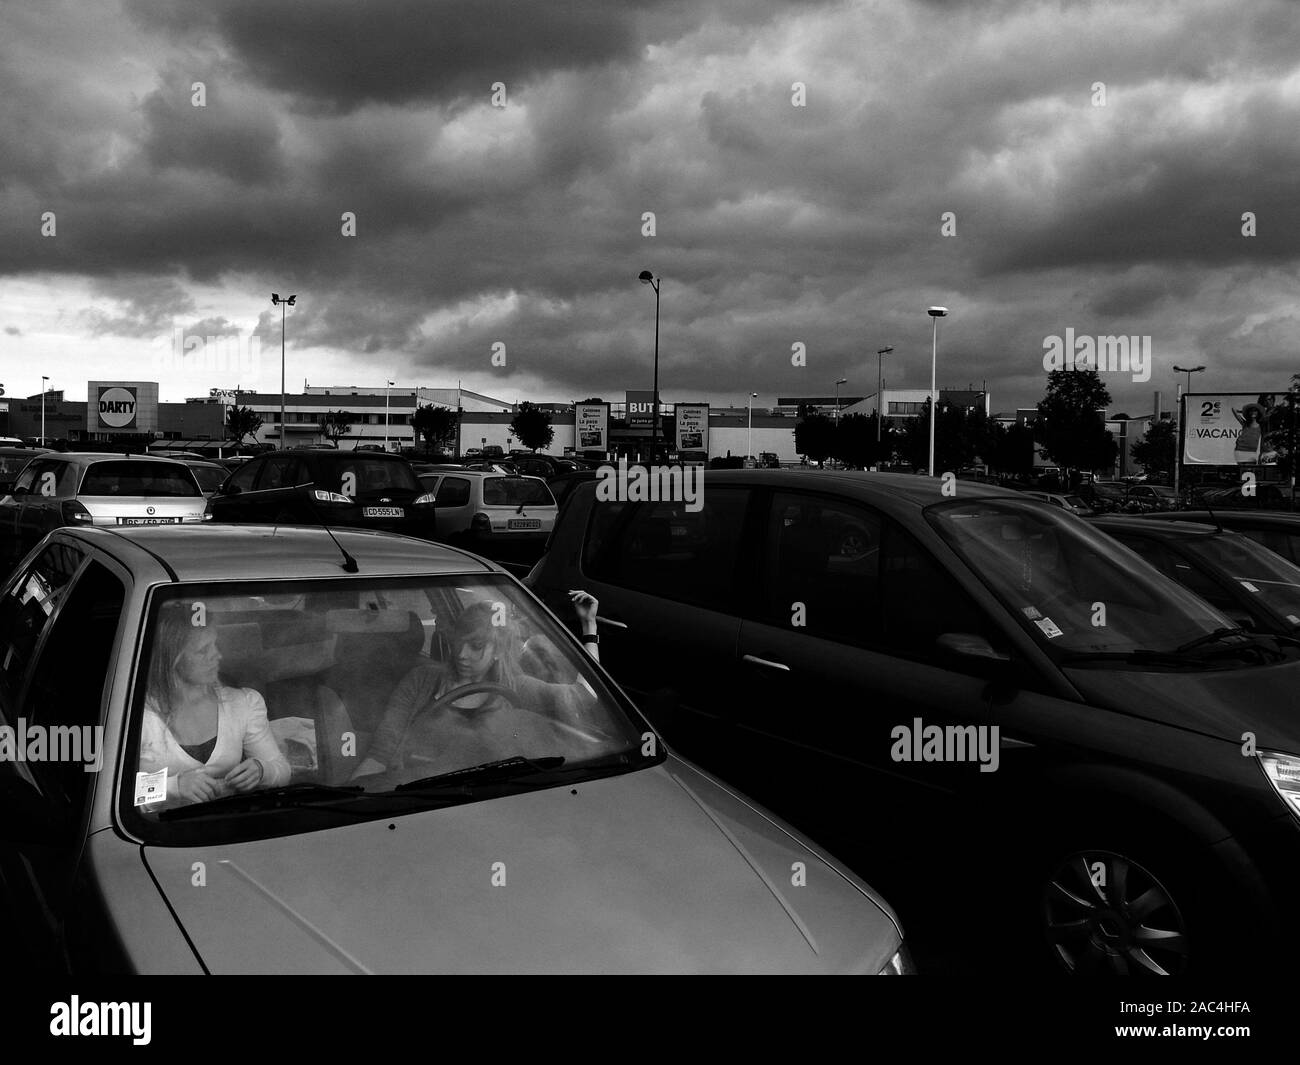 AJAXNETPHOTO. GLISY, Francia. - La pioggia nuvole avvicina - due persone è impegnato in conversazione in una macchina in un fuori del comune sito di vendita al dettaglio PARCHEGGIO AUTO.foto:JONATHAN EASTLAND/AJAX REF:GR121506 BW3638 Foto Stock